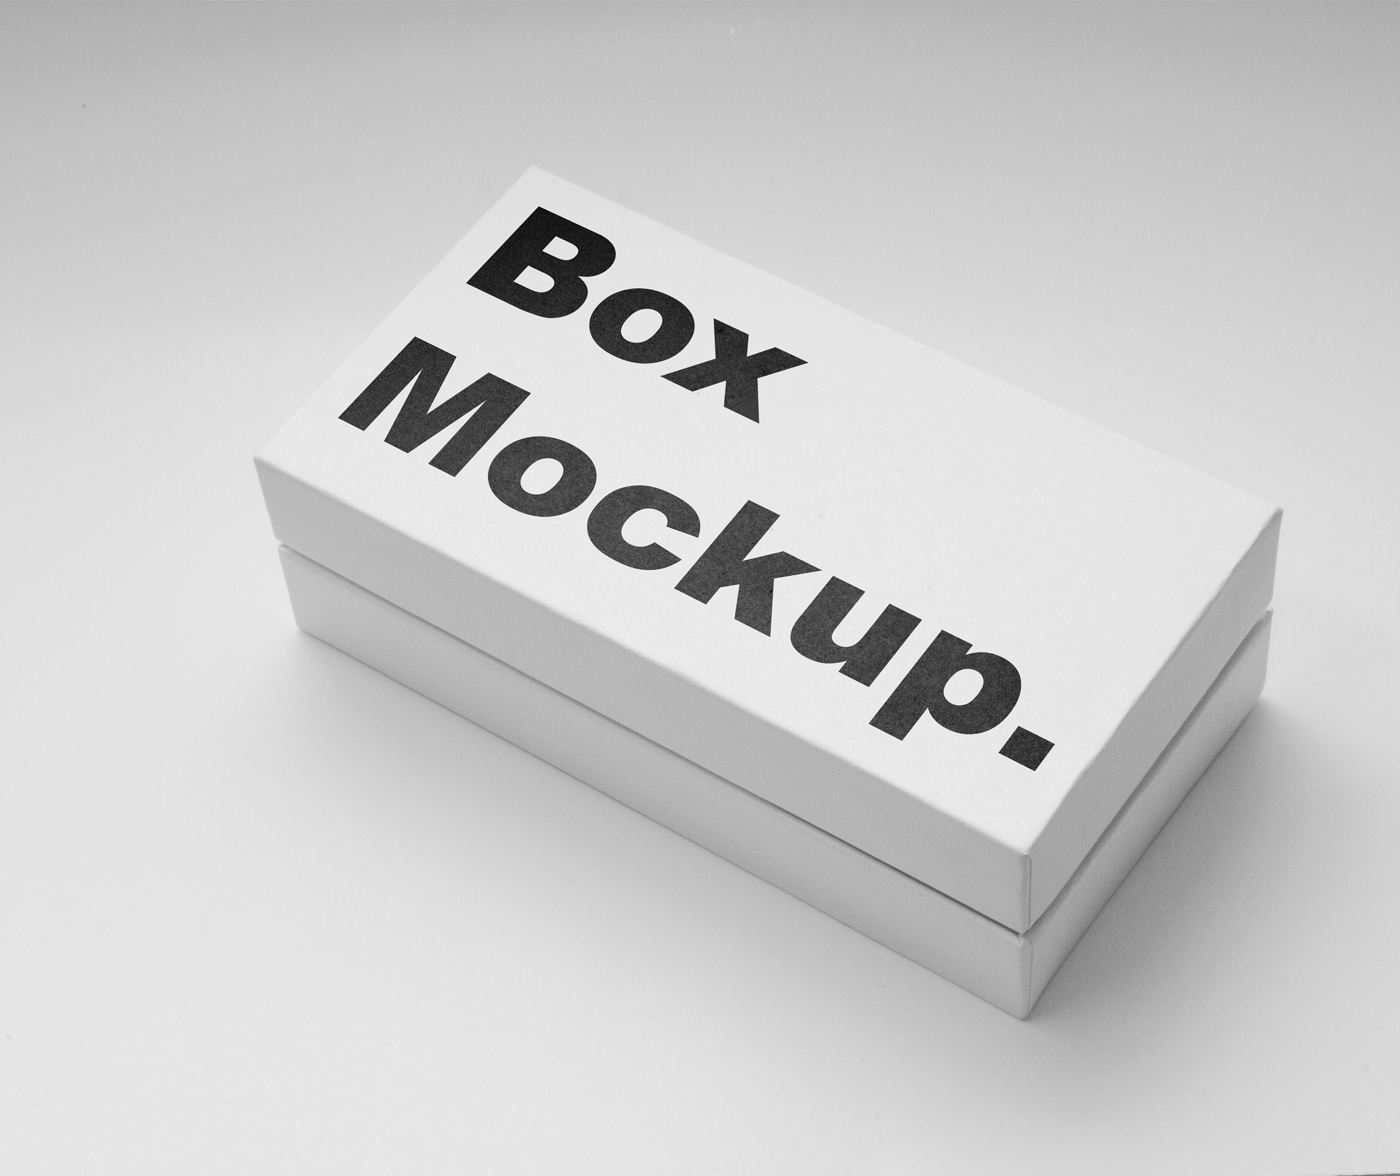 2013+ Free Box Mockup Psd Packaging Mockups PSD